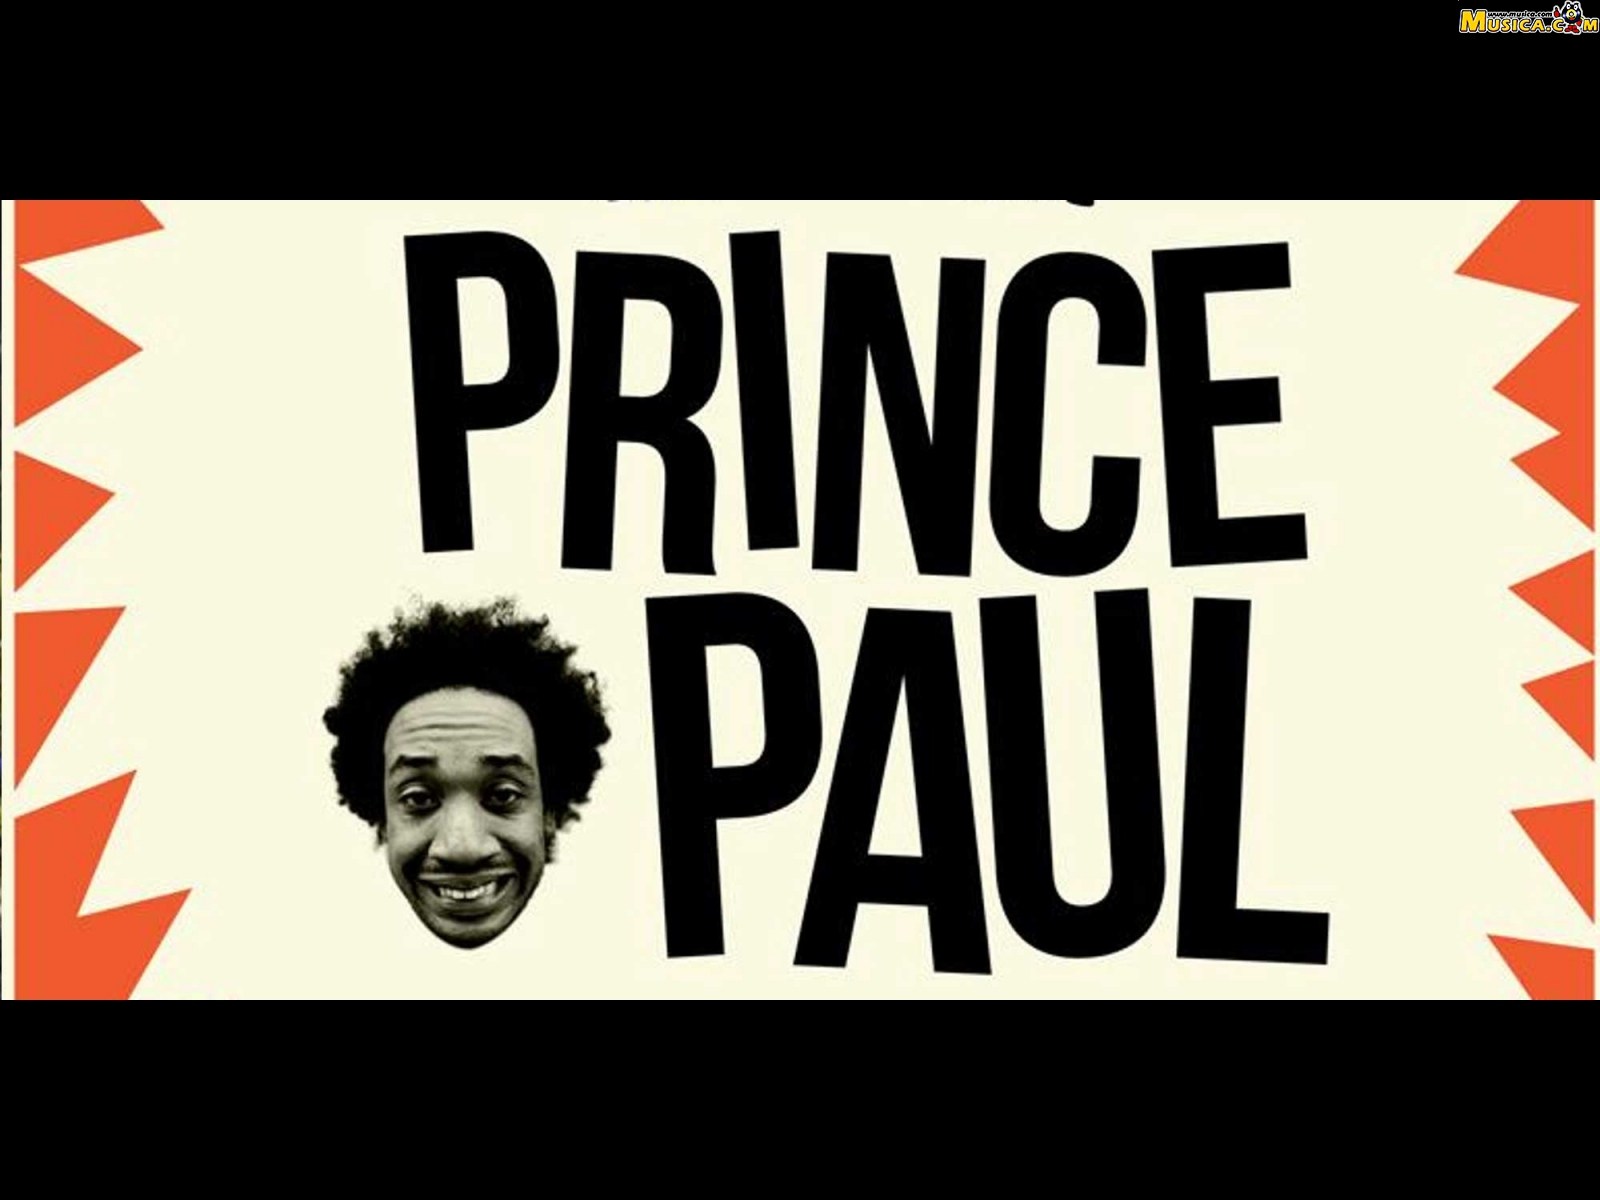 Fondo de pantalla de Prince Paul